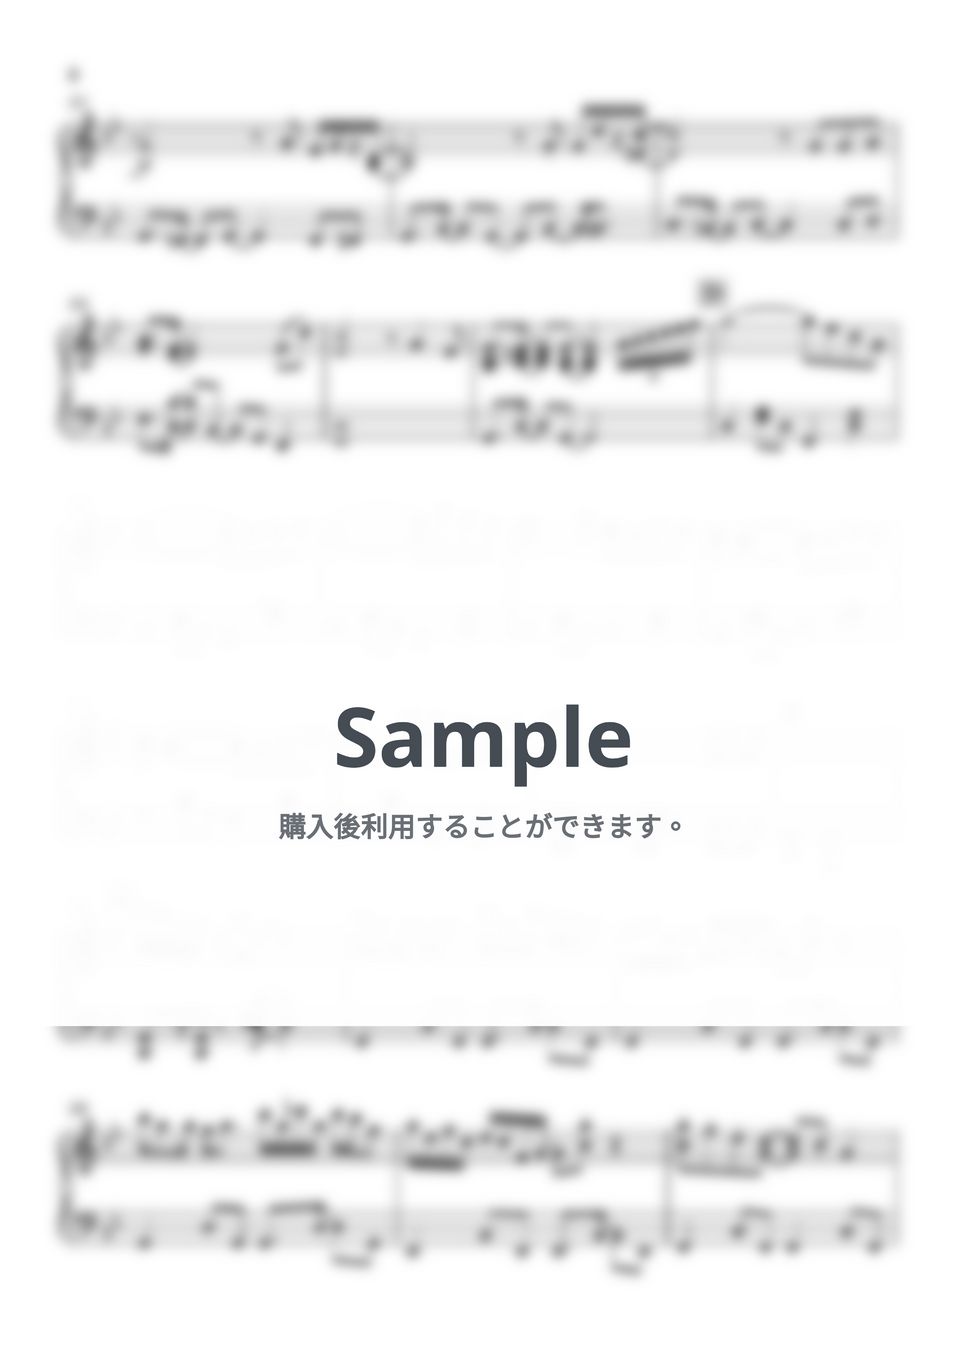 大野雄二 - ルパン三世メドレー(’78〜80) (手の小さい方向け) by Piano Lovers. jp